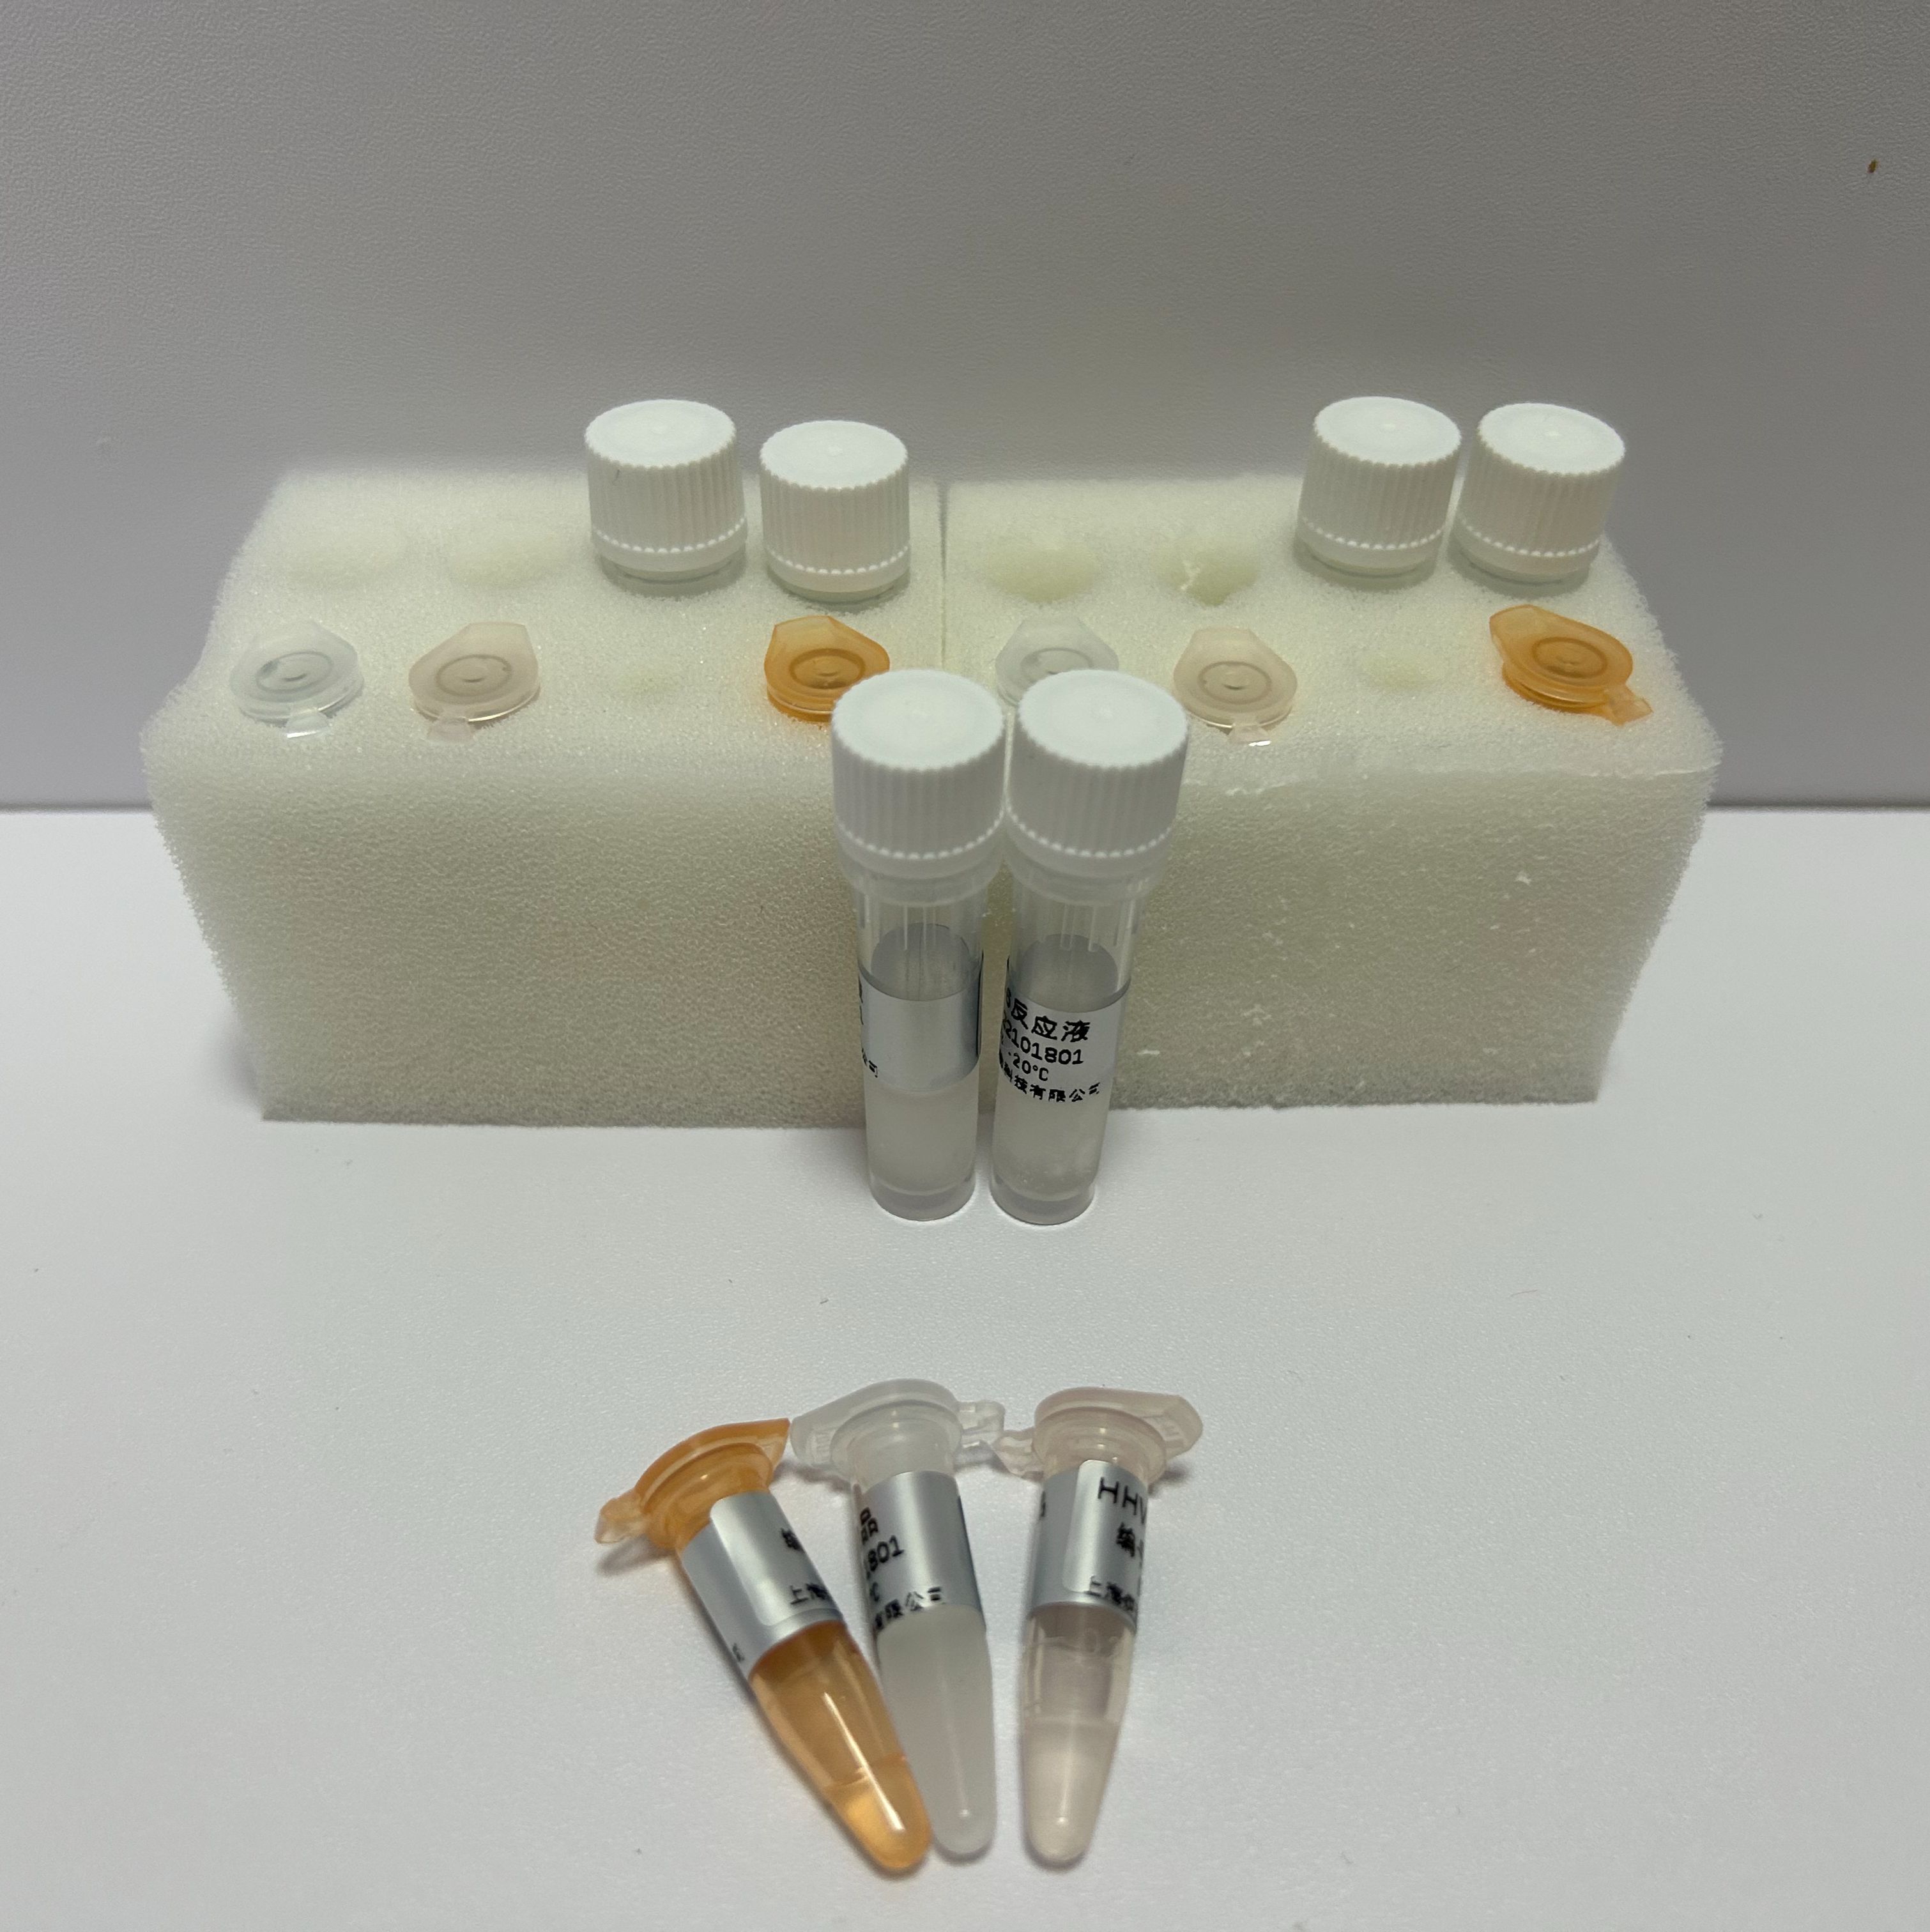 人腺病毒D82型探针法荧光定量PCR试剂盒